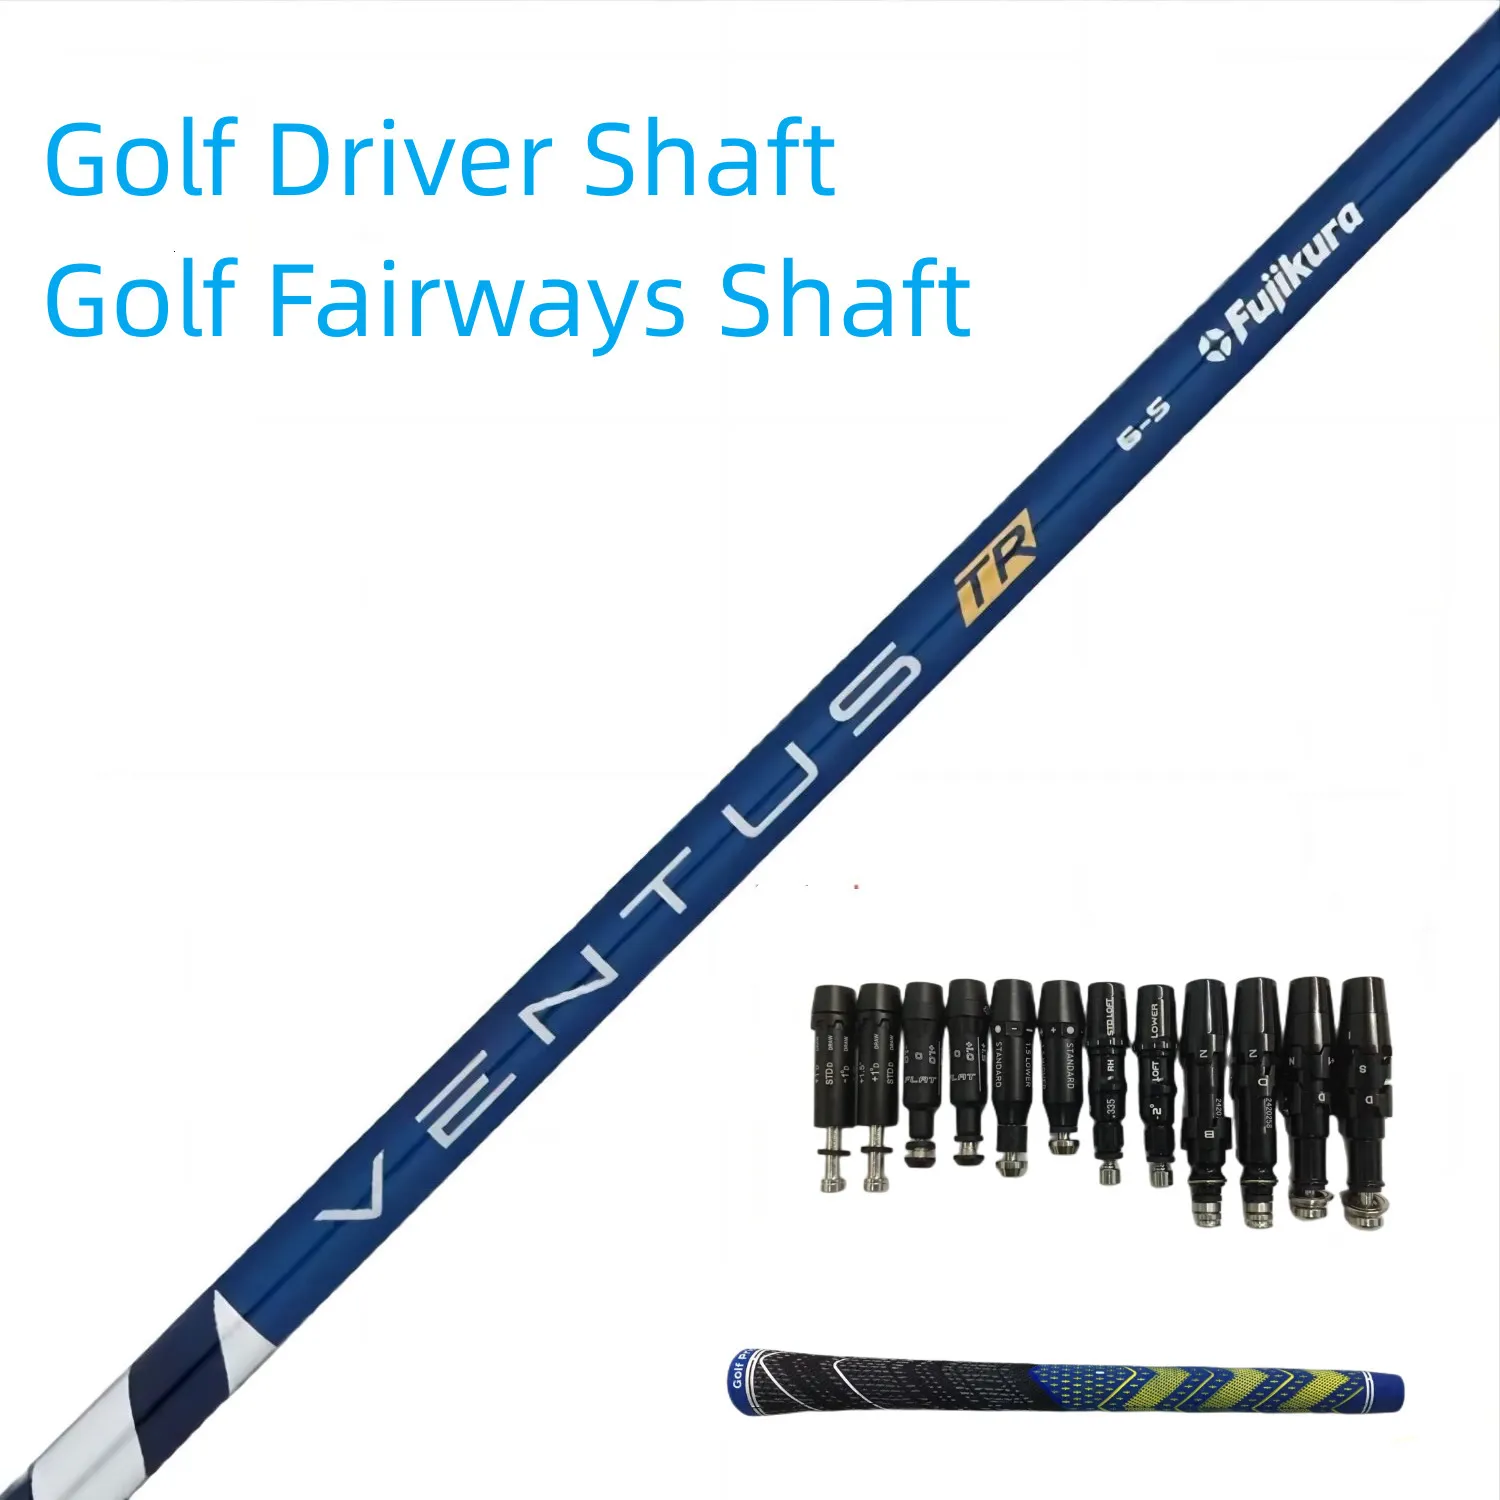 Club Heads Golf Drivers Shaft Version améliorée Fujikura Ventus TR blueblack S R Flex Graphite Shafts Manchon et poignée de montage gratuits p230713